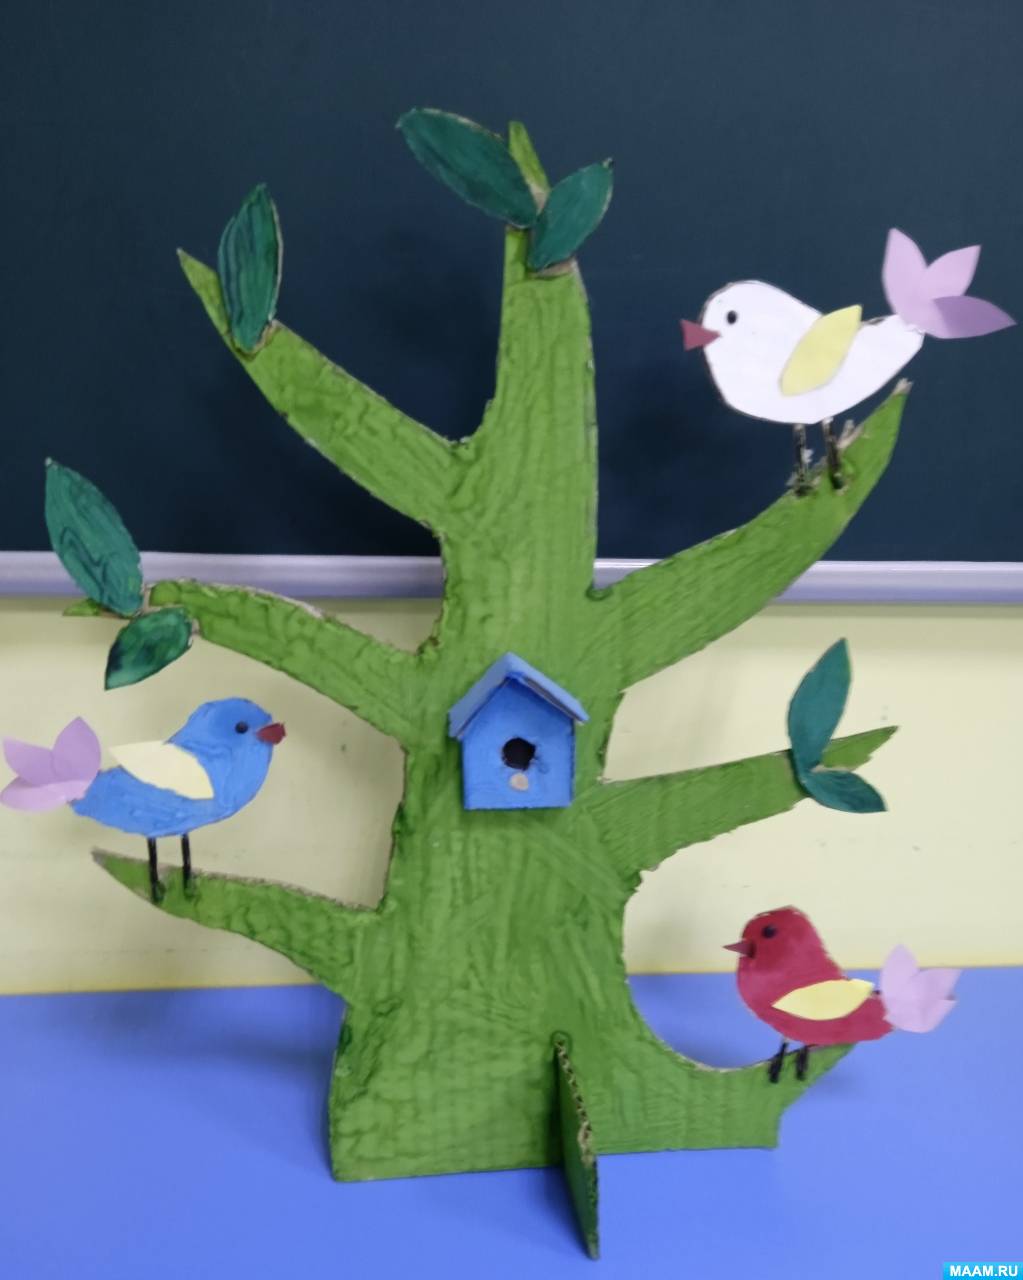 Мастер-класс по конструированию из картона и засушенных листьев «Дерево со скворечником для птичек»